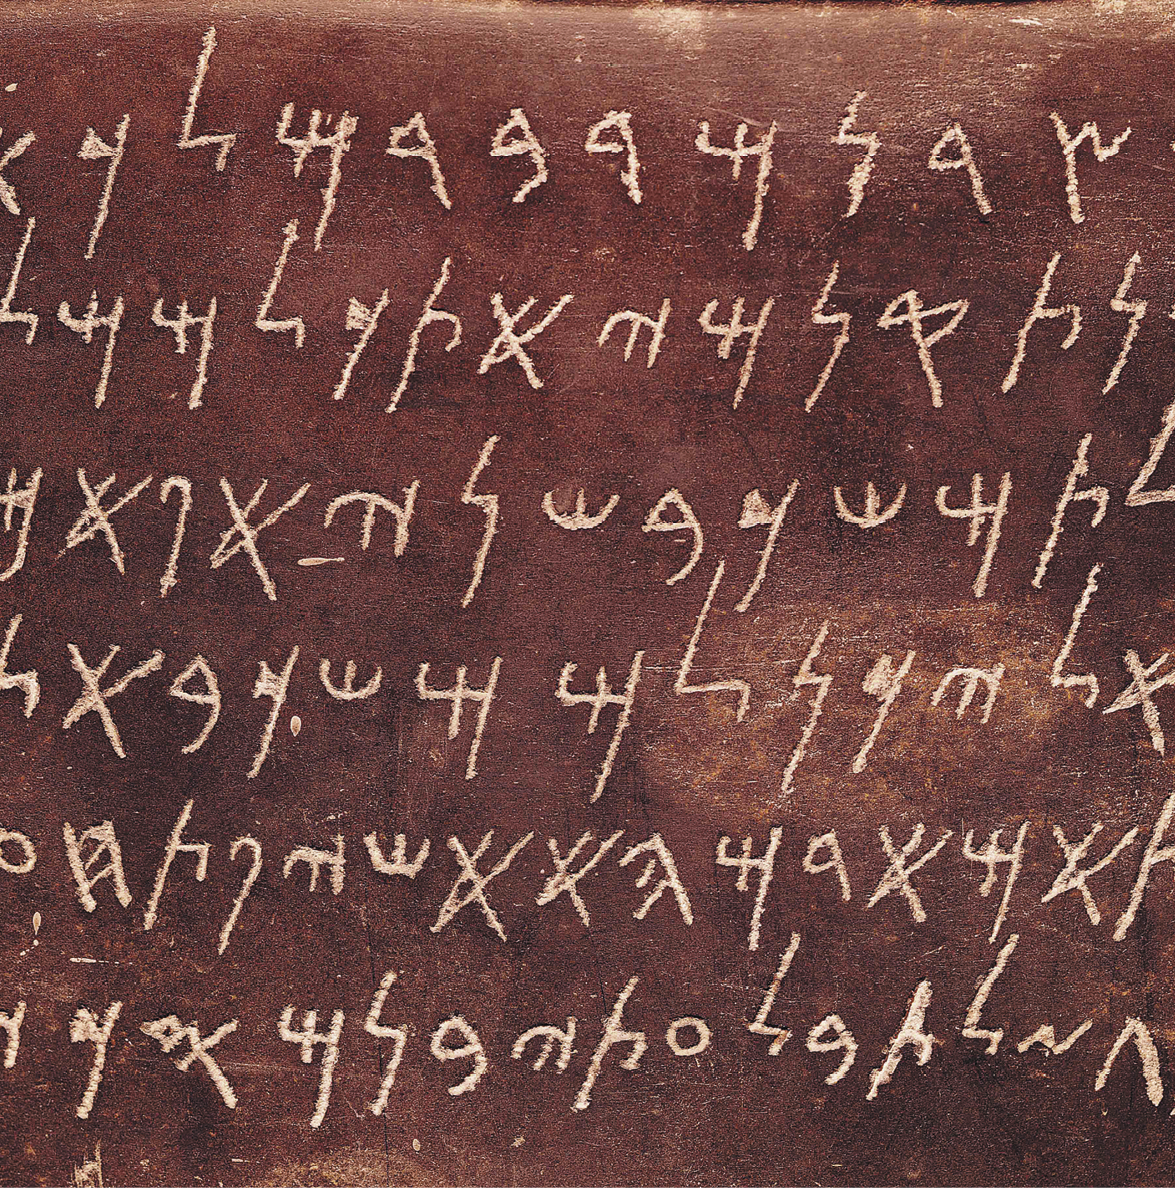 Inscrição. Sobre um fundo marrom escuro, há caracteres do alfabeto fenício em cor bege claro, dispostos na horizontal. As letras desse alfabeto são formadas por linhas finas.